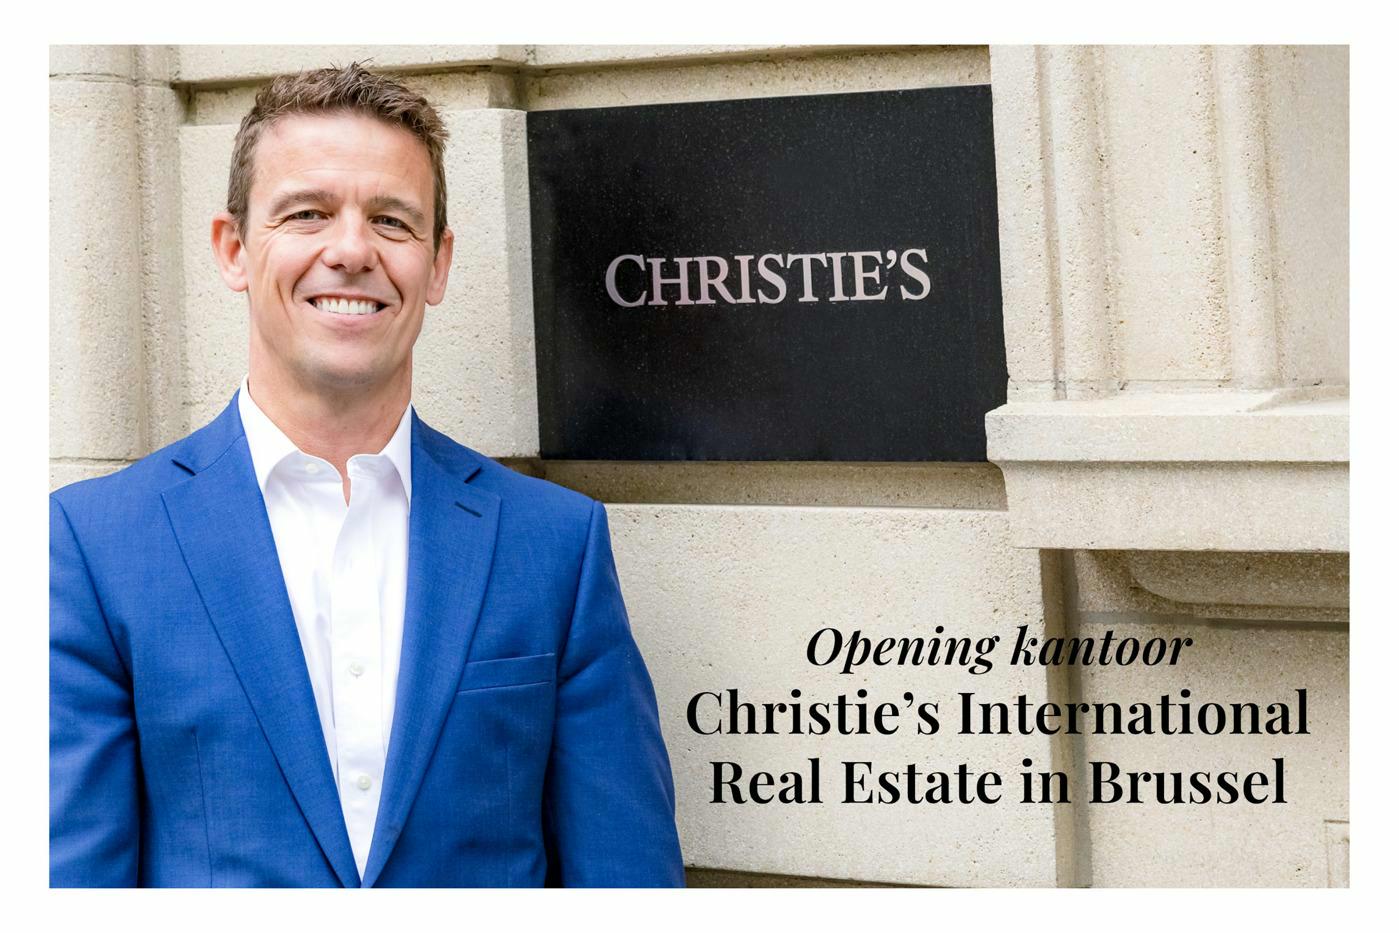 Christie's International Real Estate in Brussel: opening kantoor